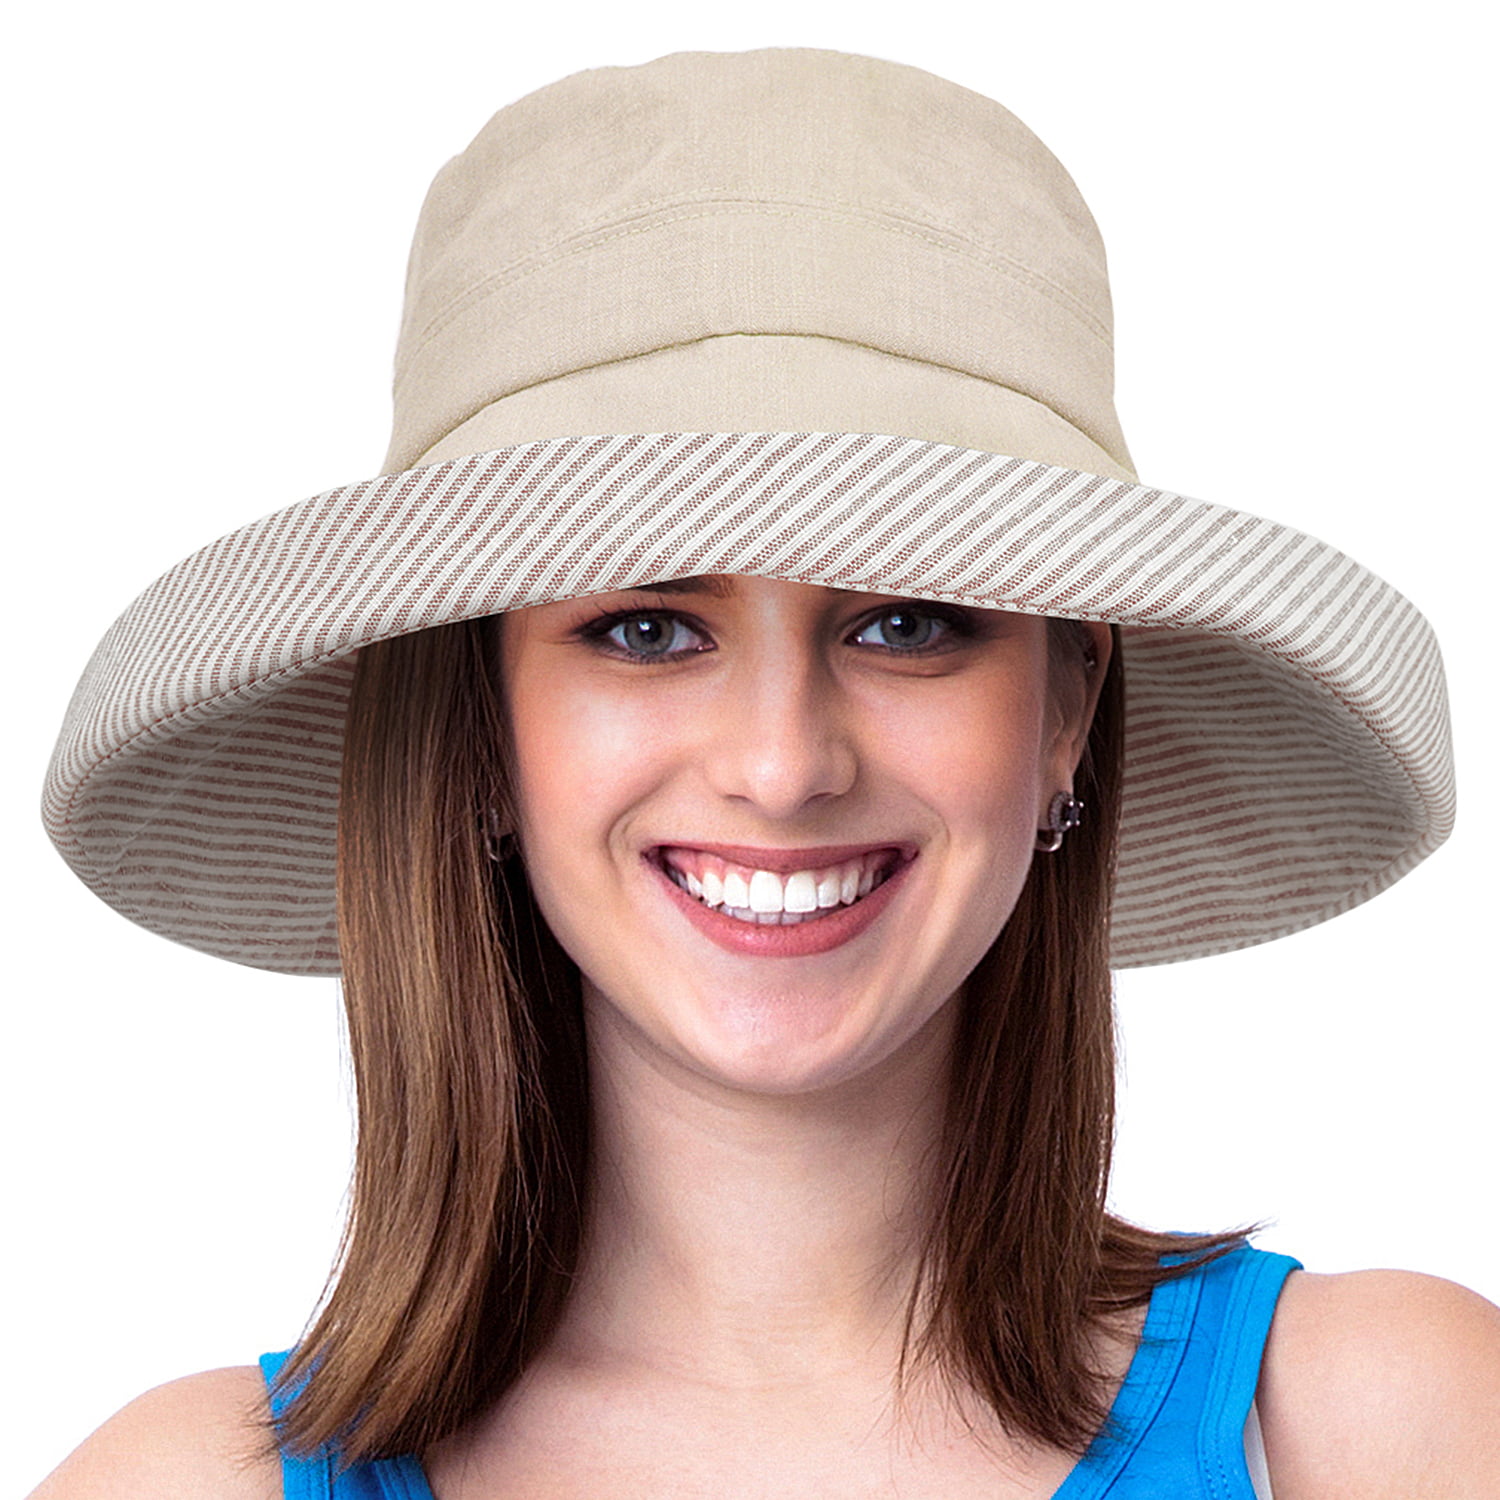 Womens Summer Sun Hat Roll Up Floppy Packable Beach Cap Travel Fishig Bucket Hat 